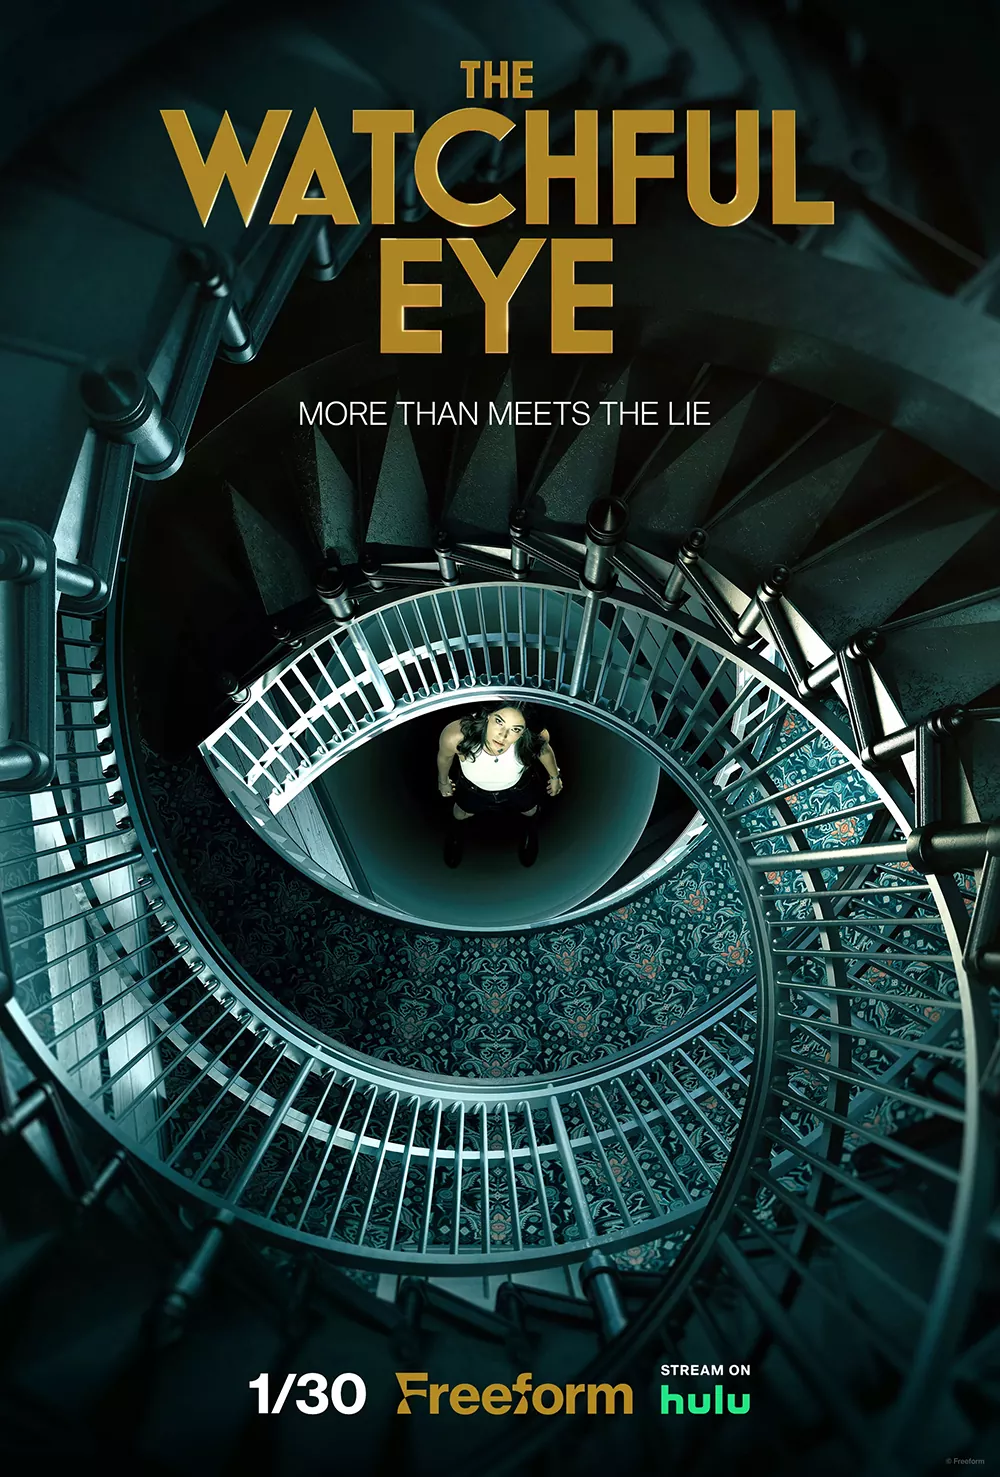 Trailer Από Τη Νέα Σειρά "The Watchful Eye"